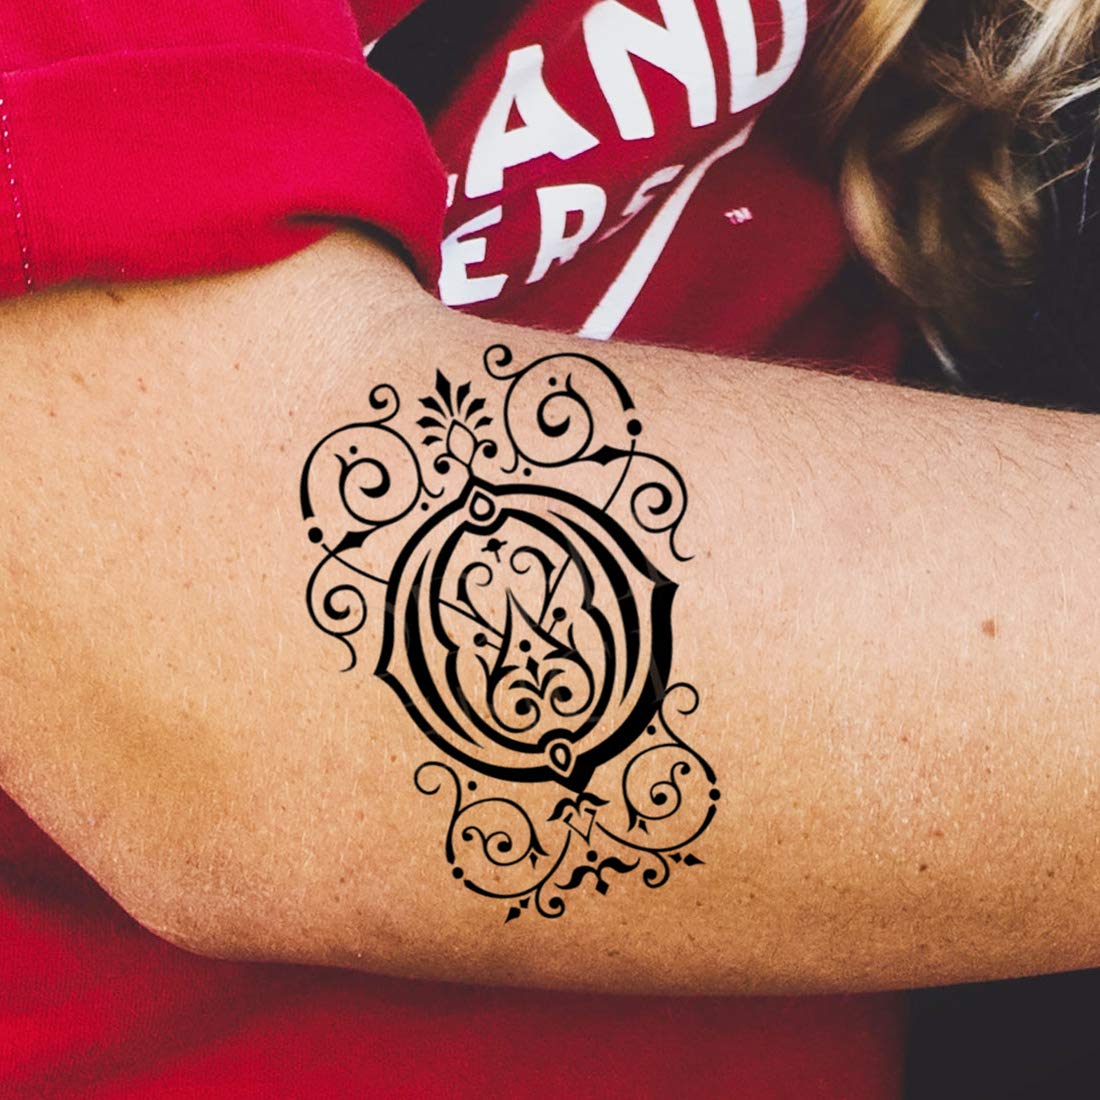 Tattoo uploaded by WILLI TATTOOS INK • Tattoodo